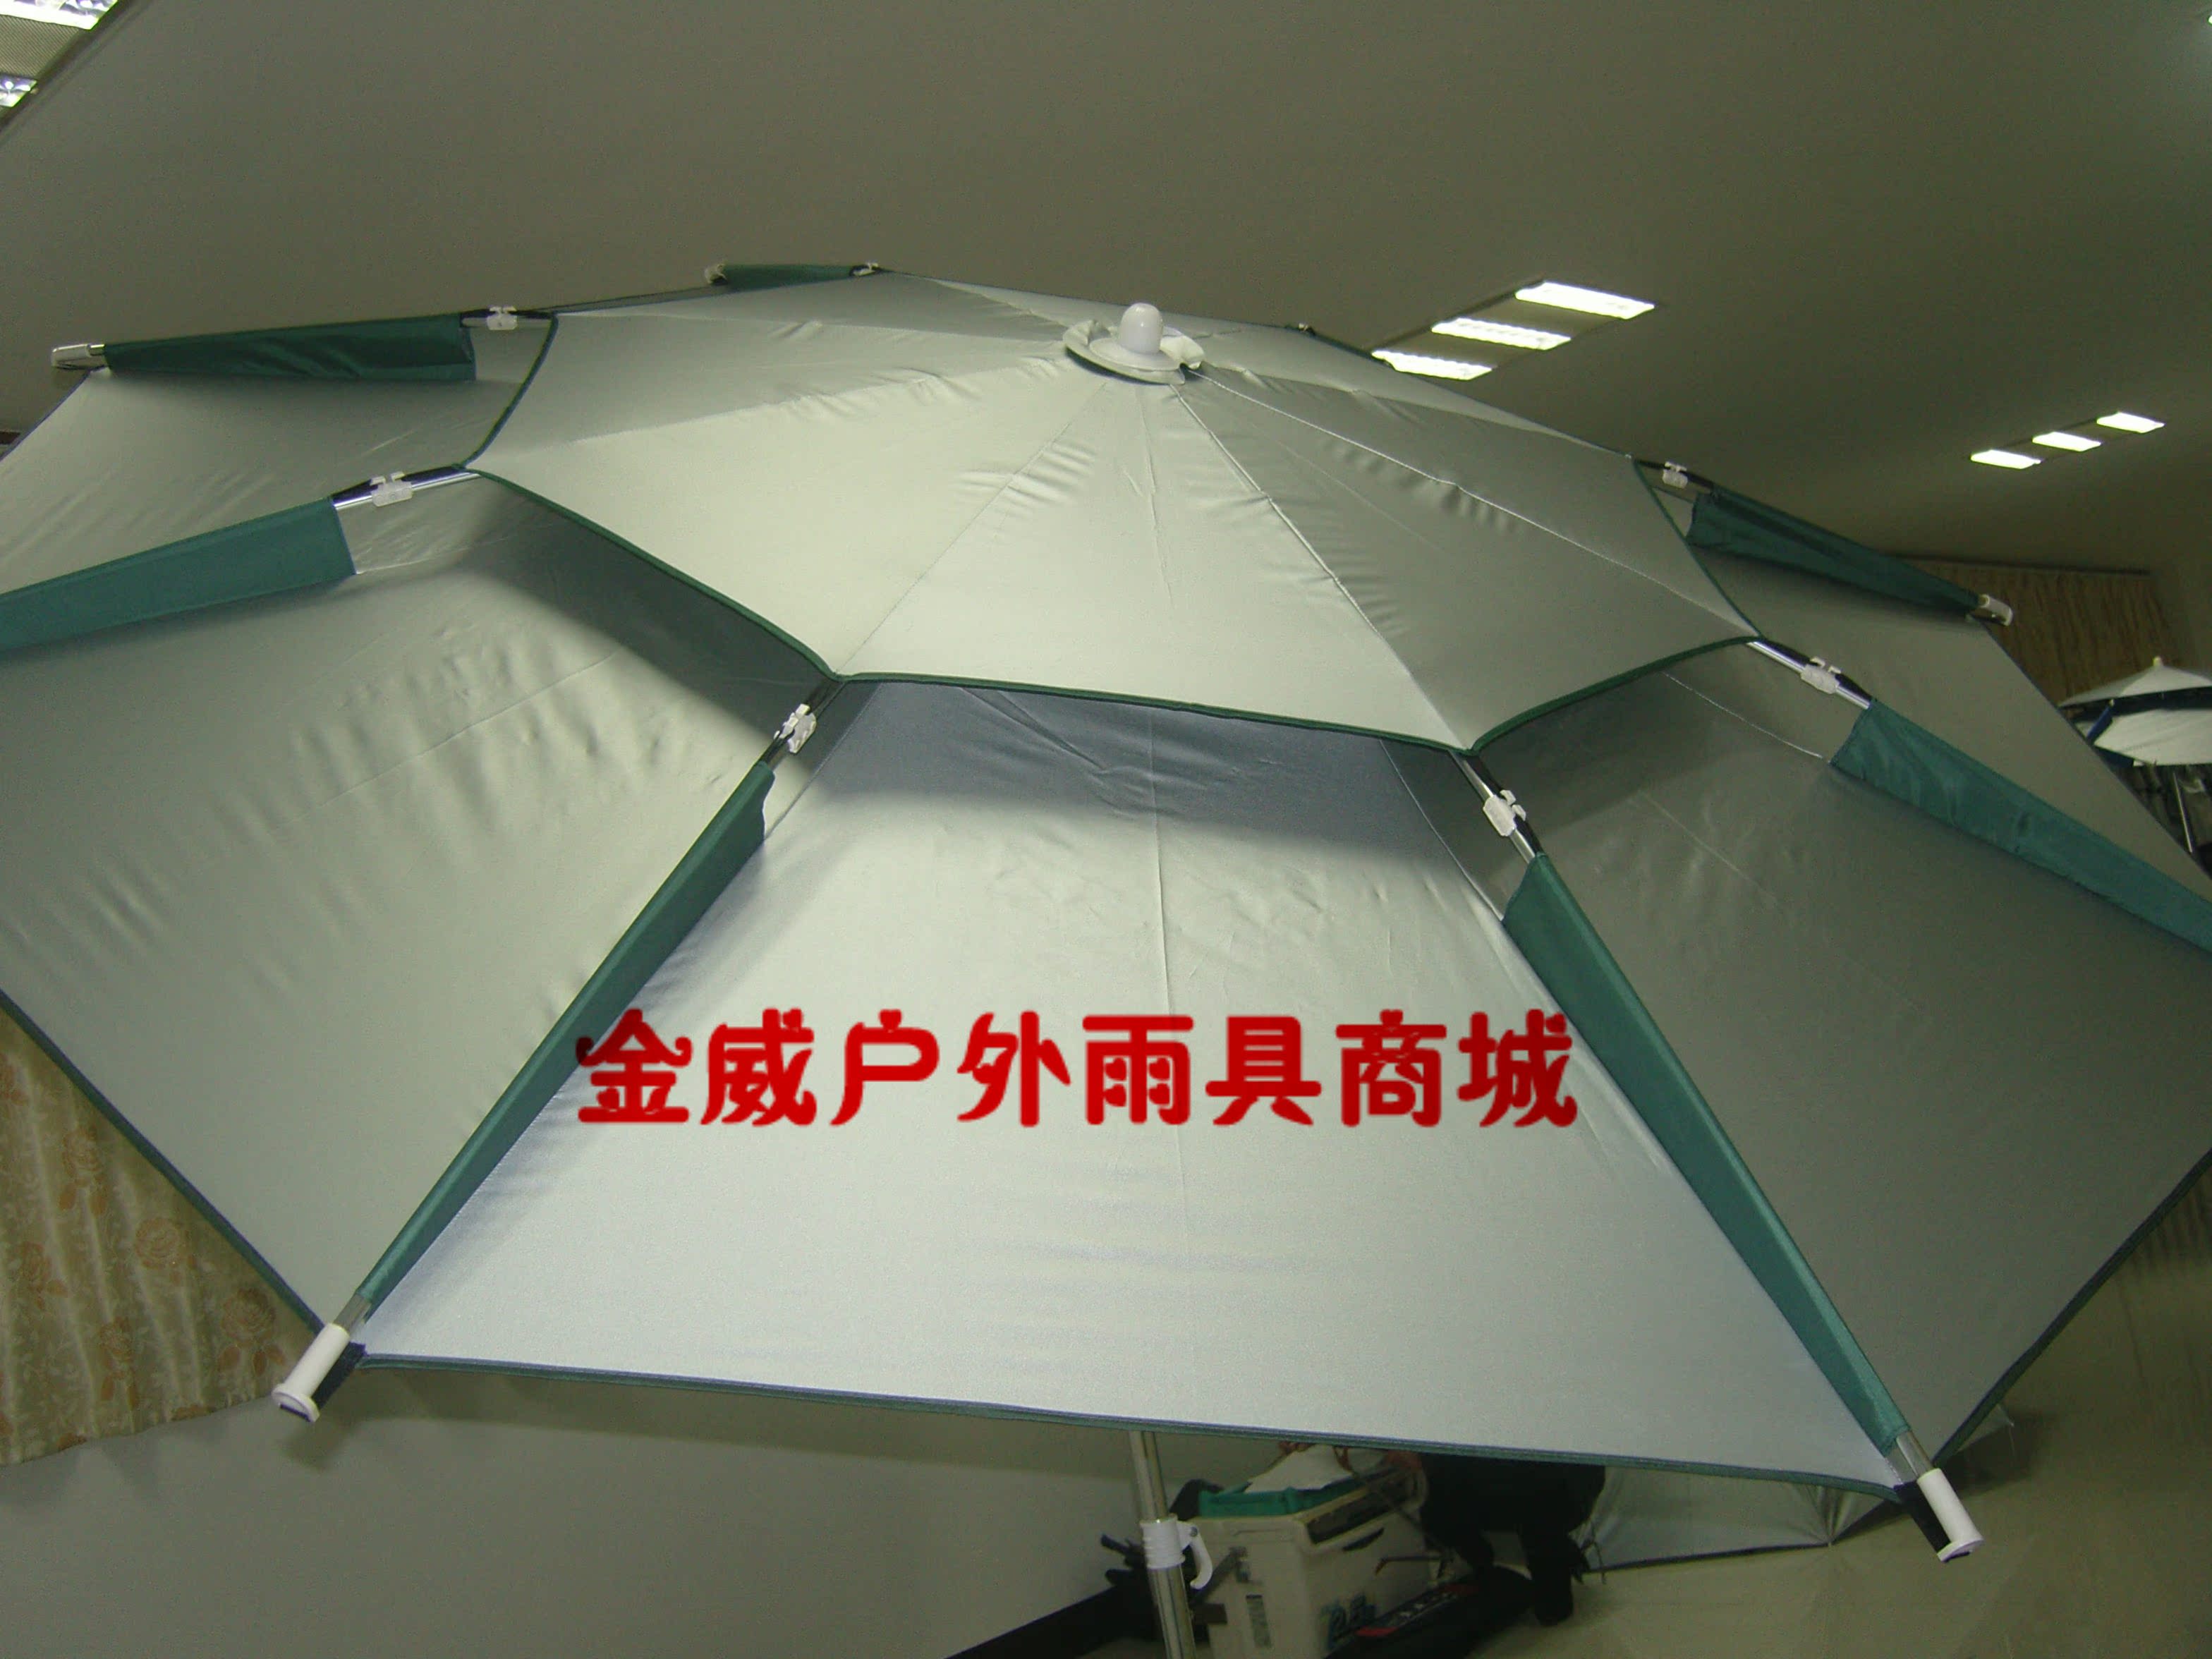 特价金威2011新款钓鱼伞/镁合金2.2米加固/防风防雨防紫外线更佳